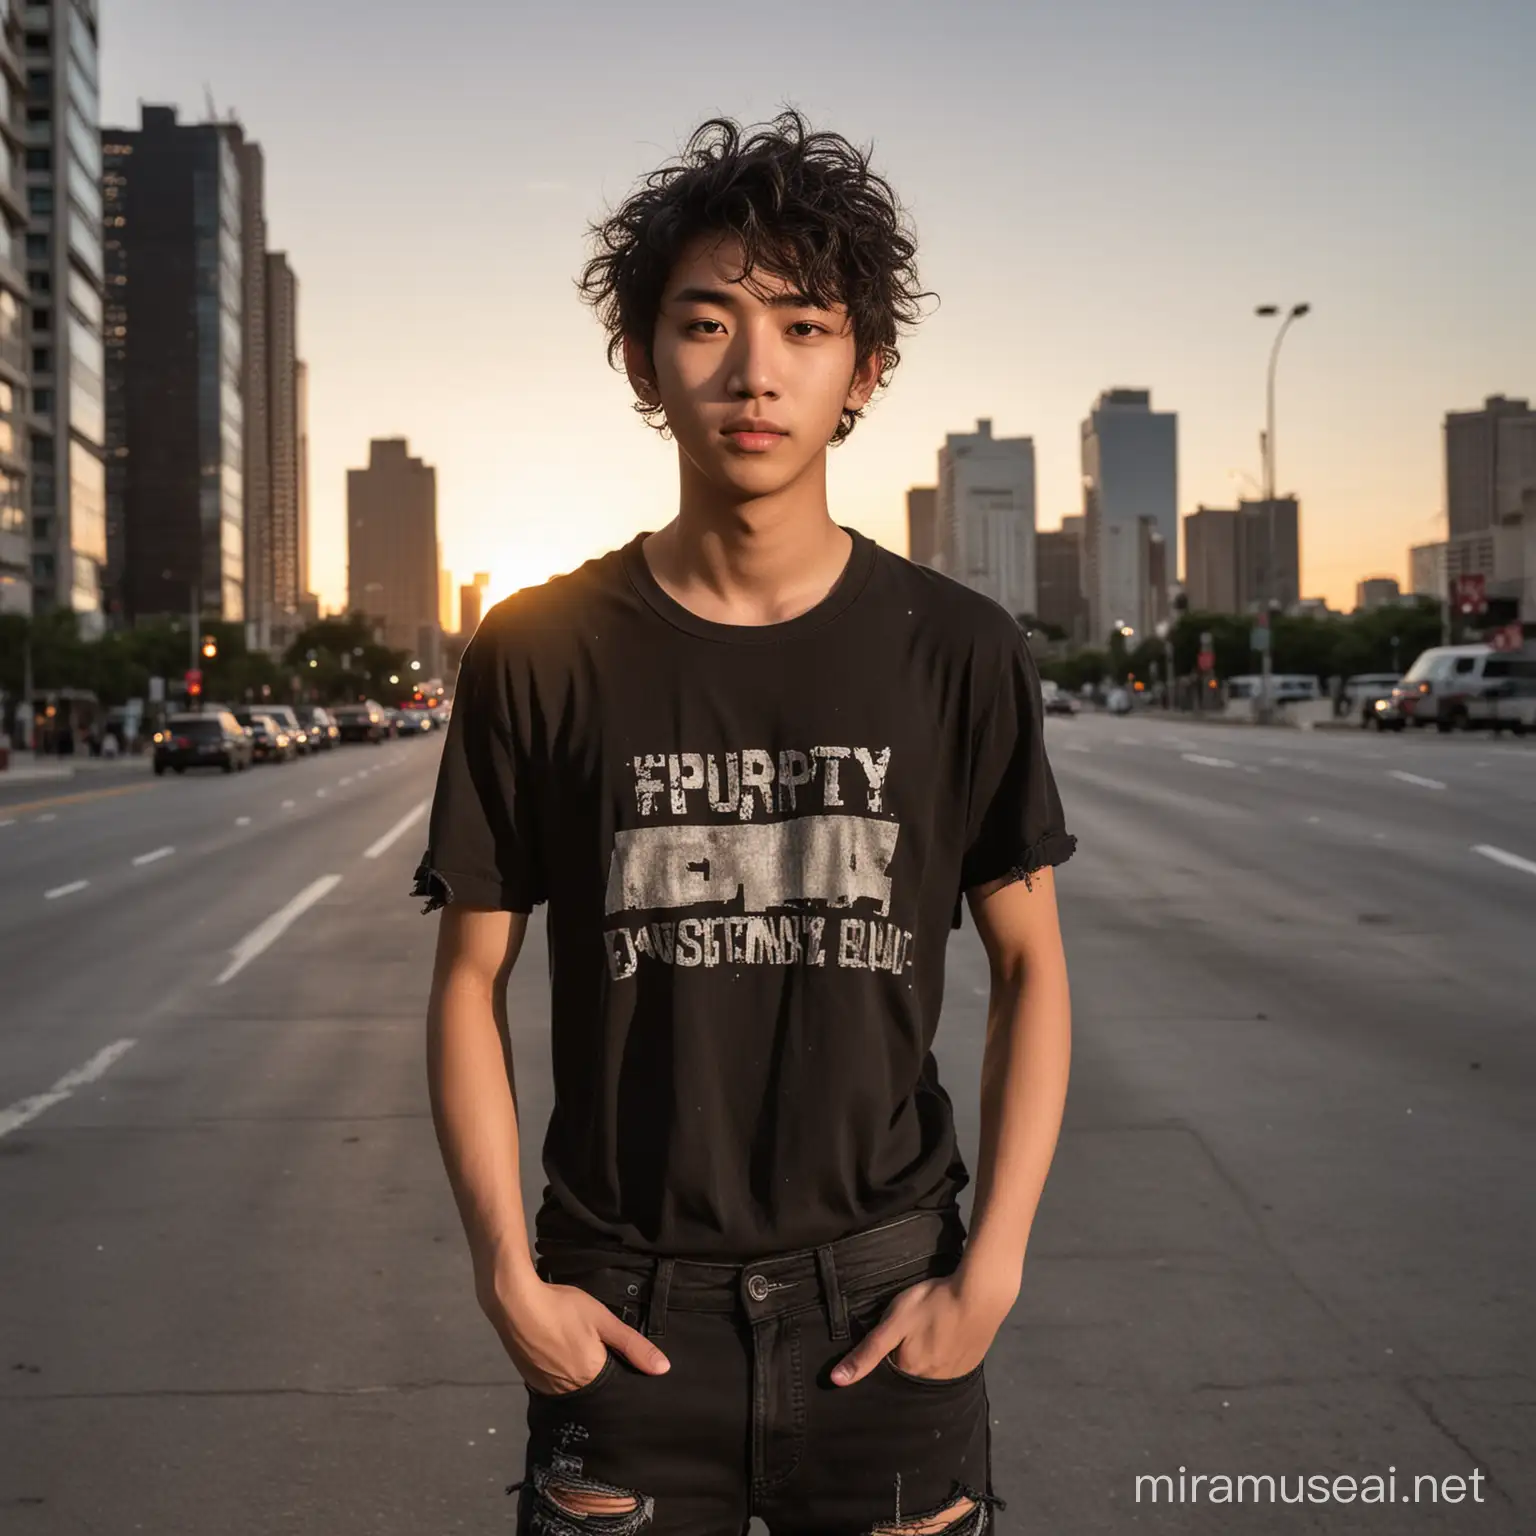 un ado mâle de 18 ans de type asiatique grunge, cheveux fins bouclés , les bras écartés, en  jeans noirs déchirés, tee-shirt noir avec manches courtes, debout dans une ville, au coucher du soleil